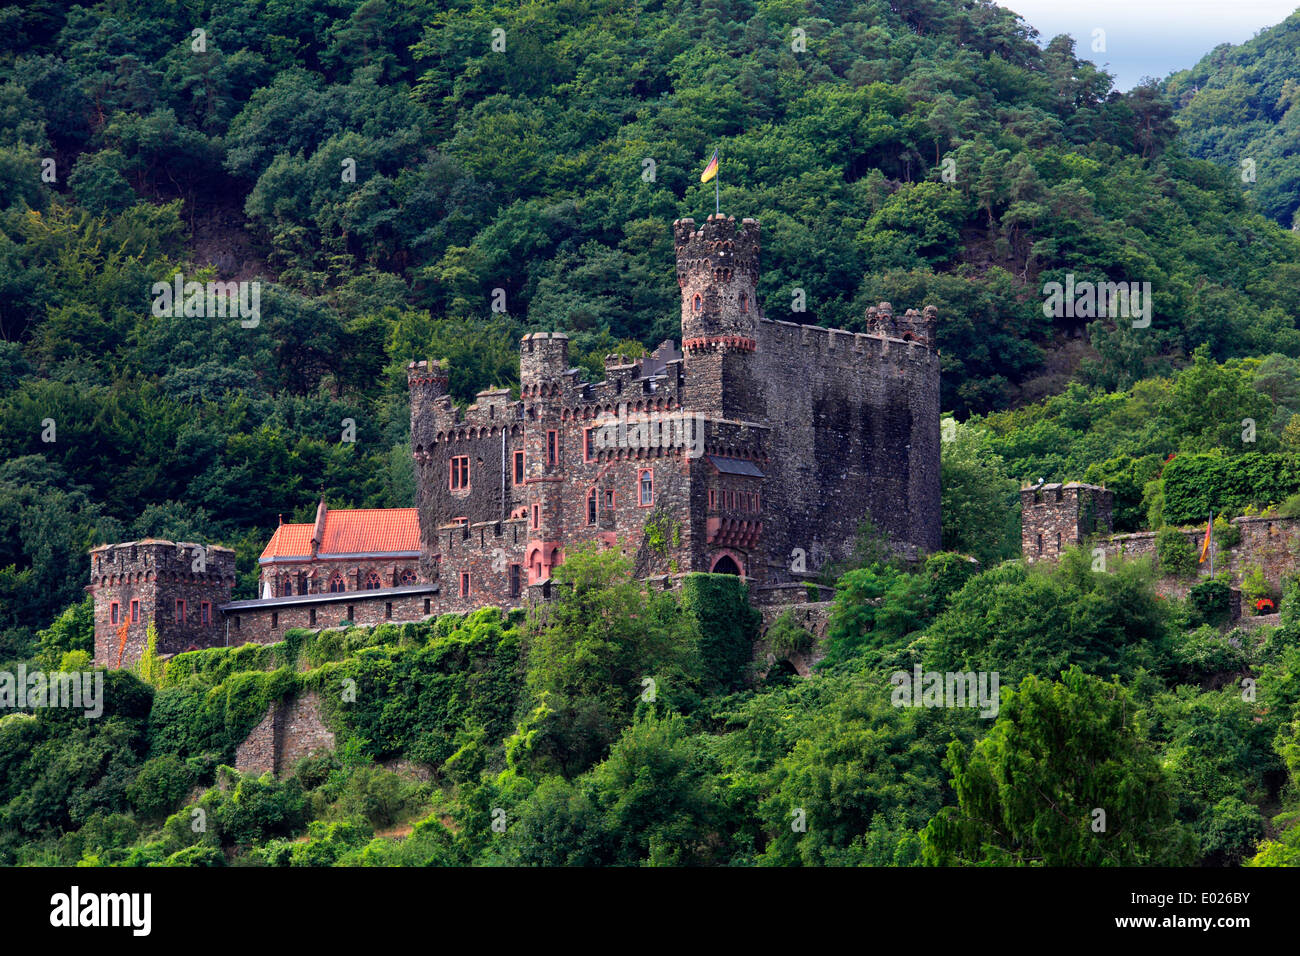 Foto von reichenstein Burg über trechtingshausen, Rheintal, Deutschland Stockfoto